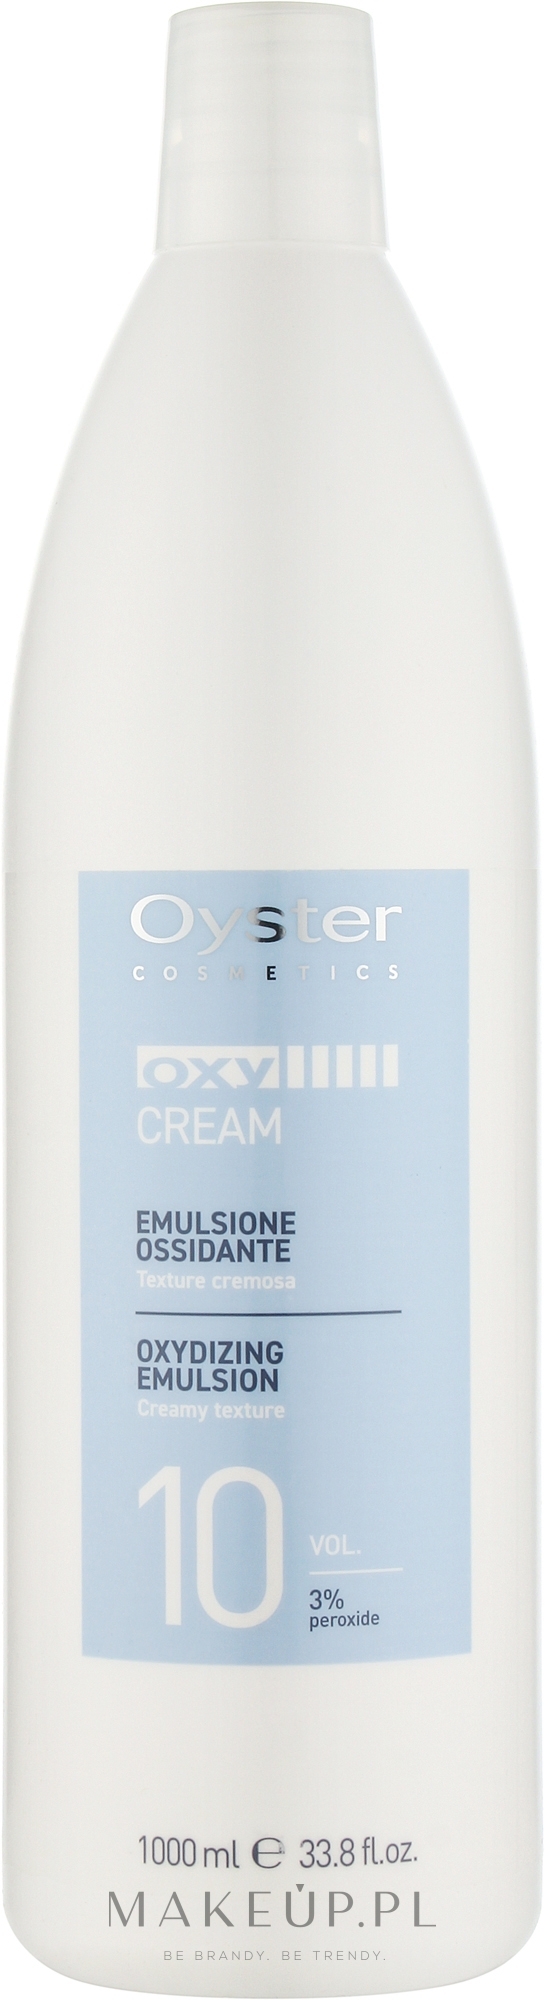 Utleniacz 10 vol. 3% - Oyster Cosmetics Oxy Cream Oxydant — Zdjęcie 1000 ml